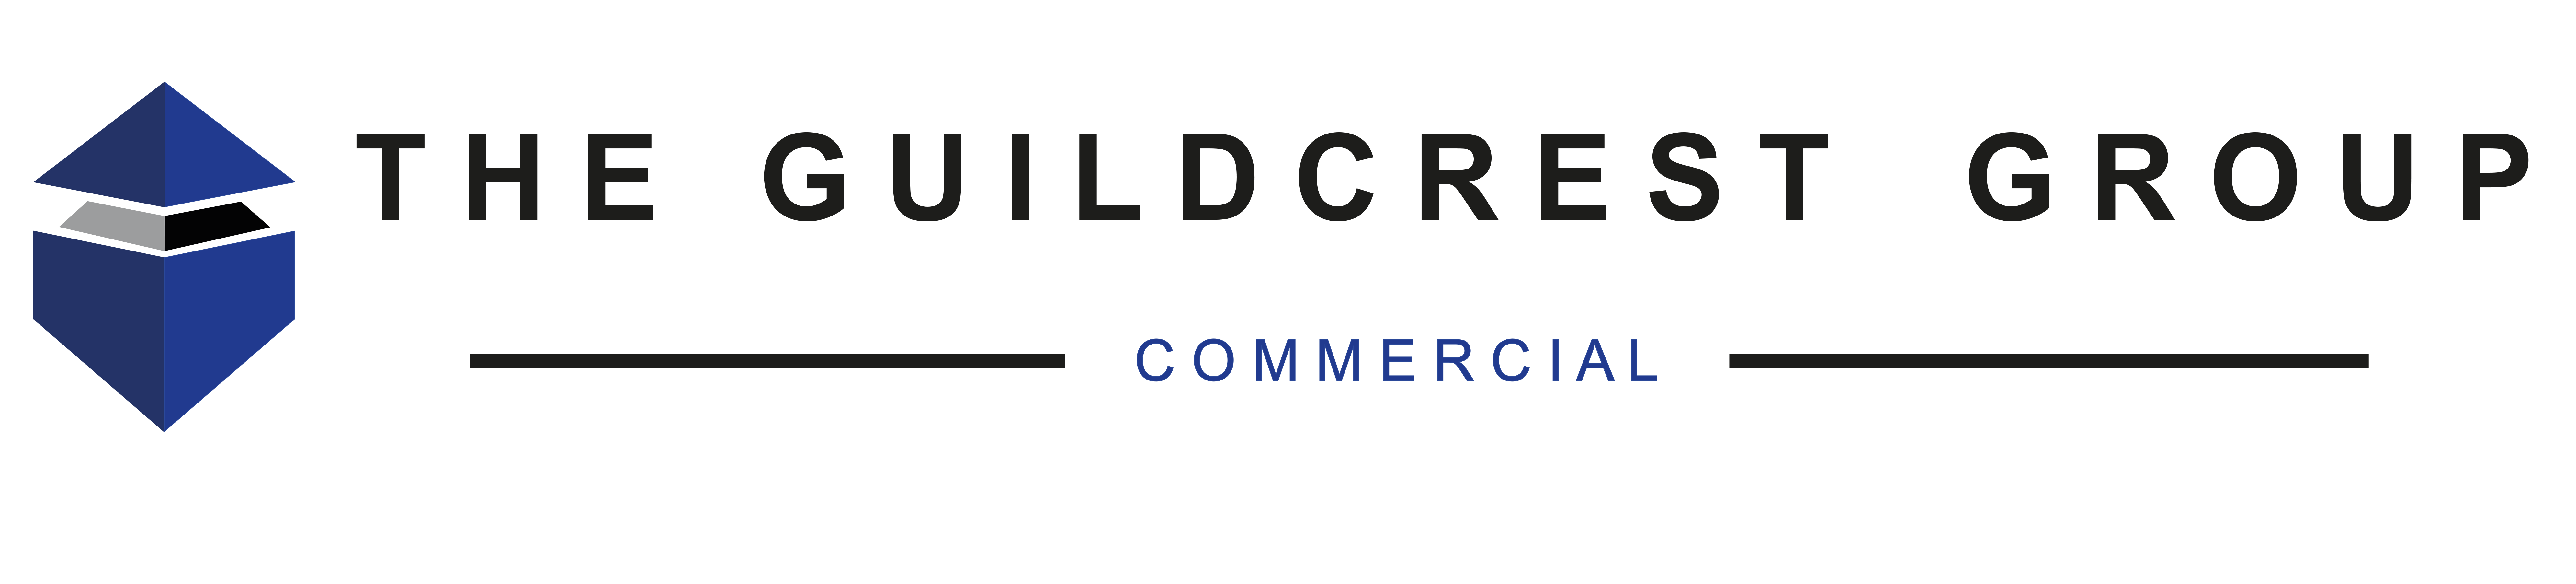 Guildcrest Commercial